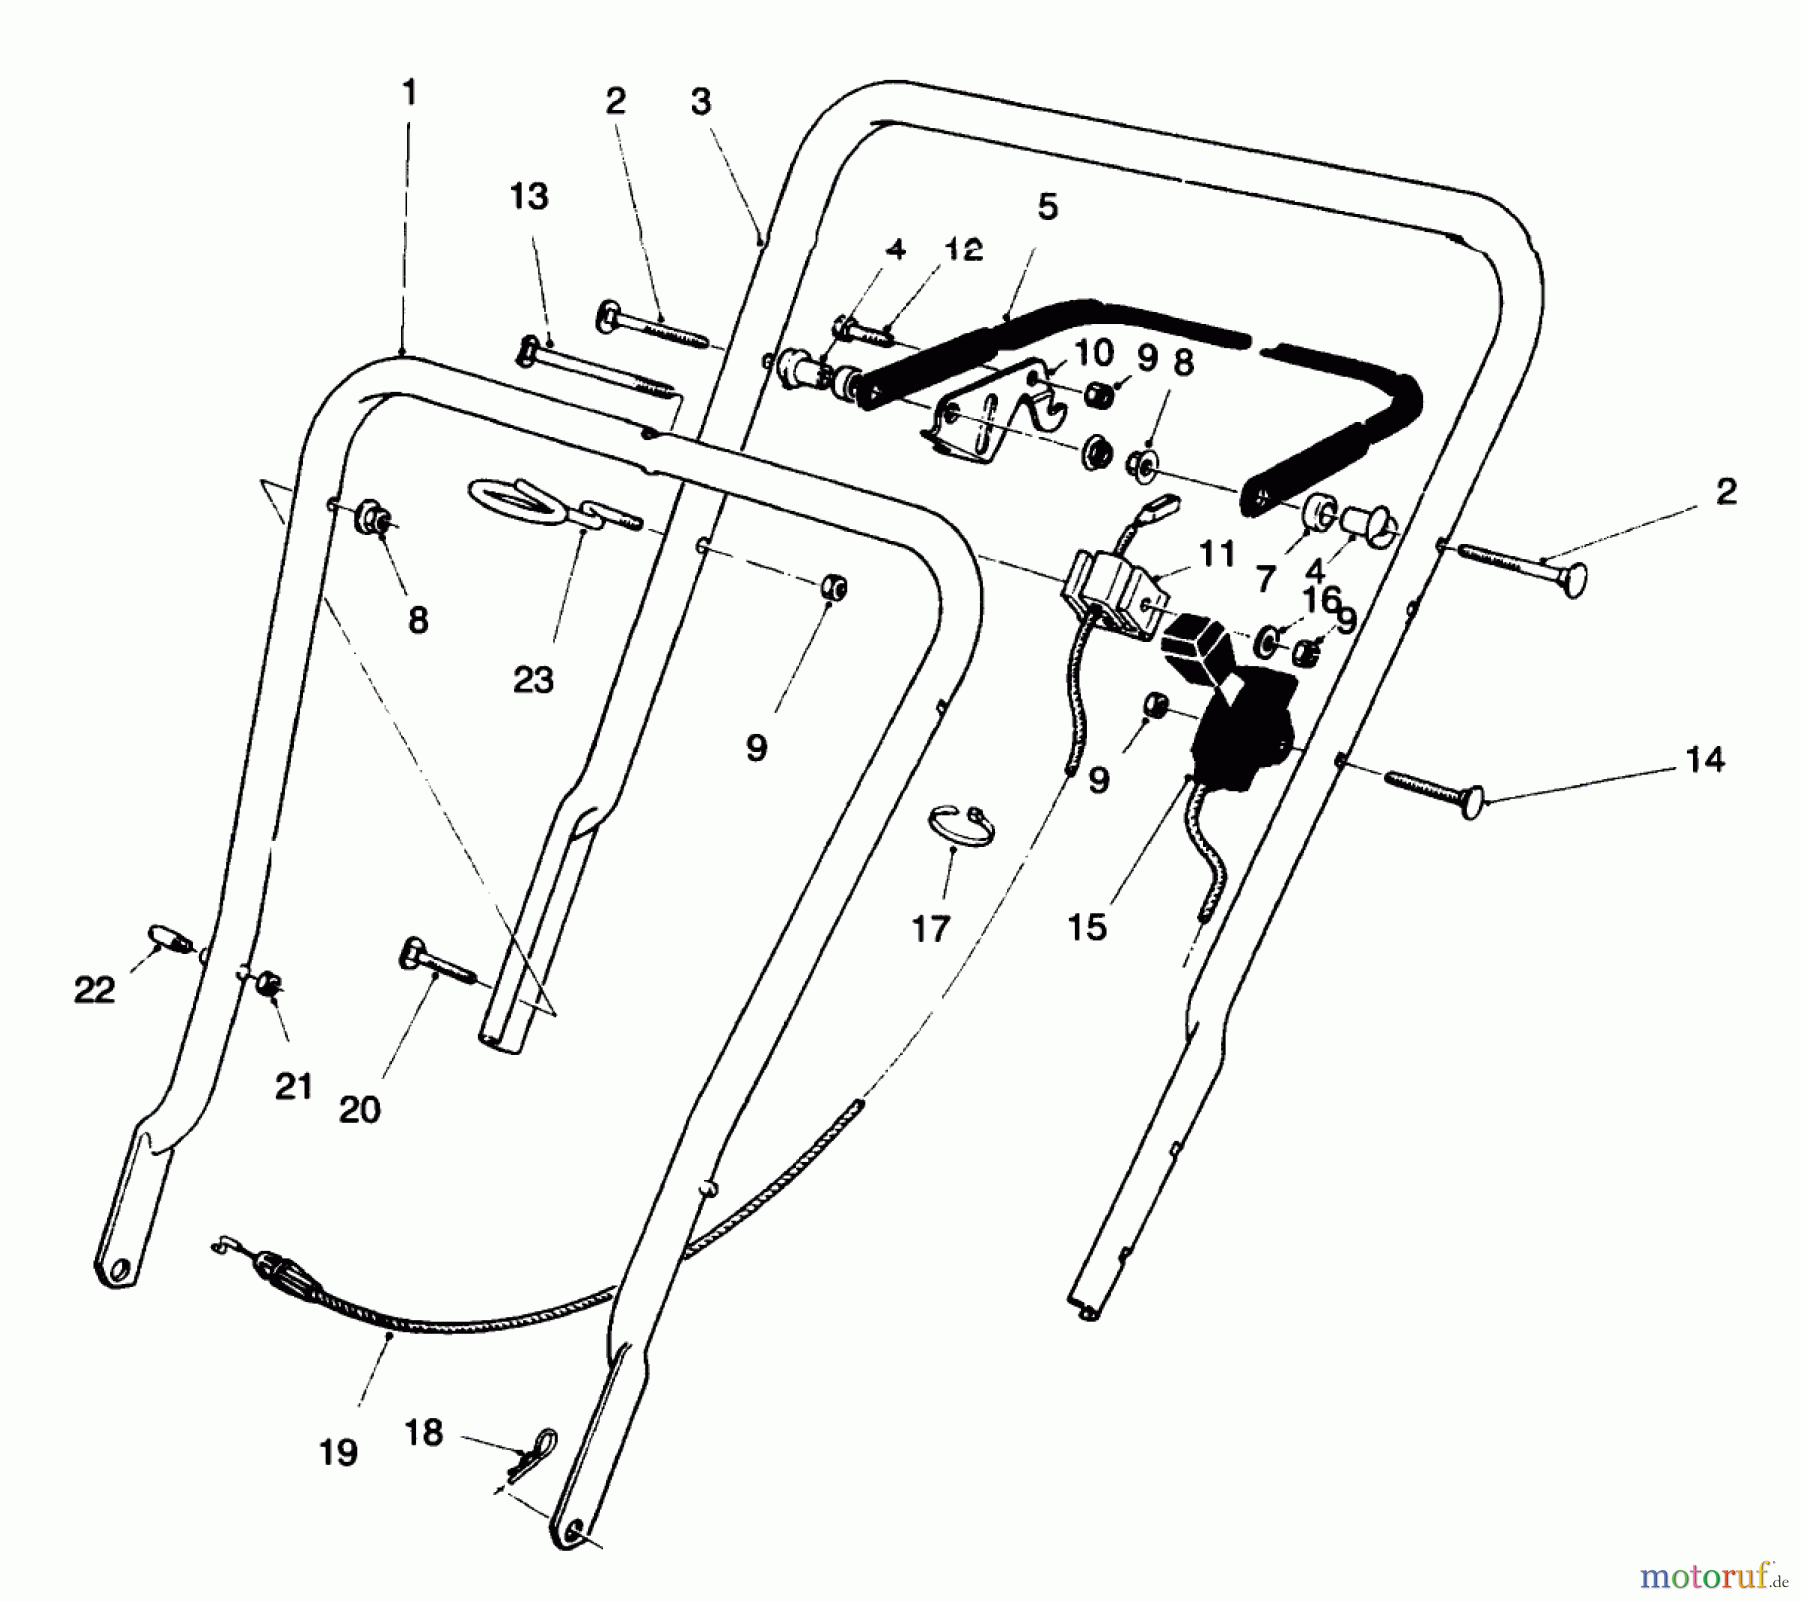  Toro Neu Mowers, Walk-Behind Seite 1 16400 - Toro Lawnmower, 1996 (6900001-6999999) HANDLE ASSEMBLY